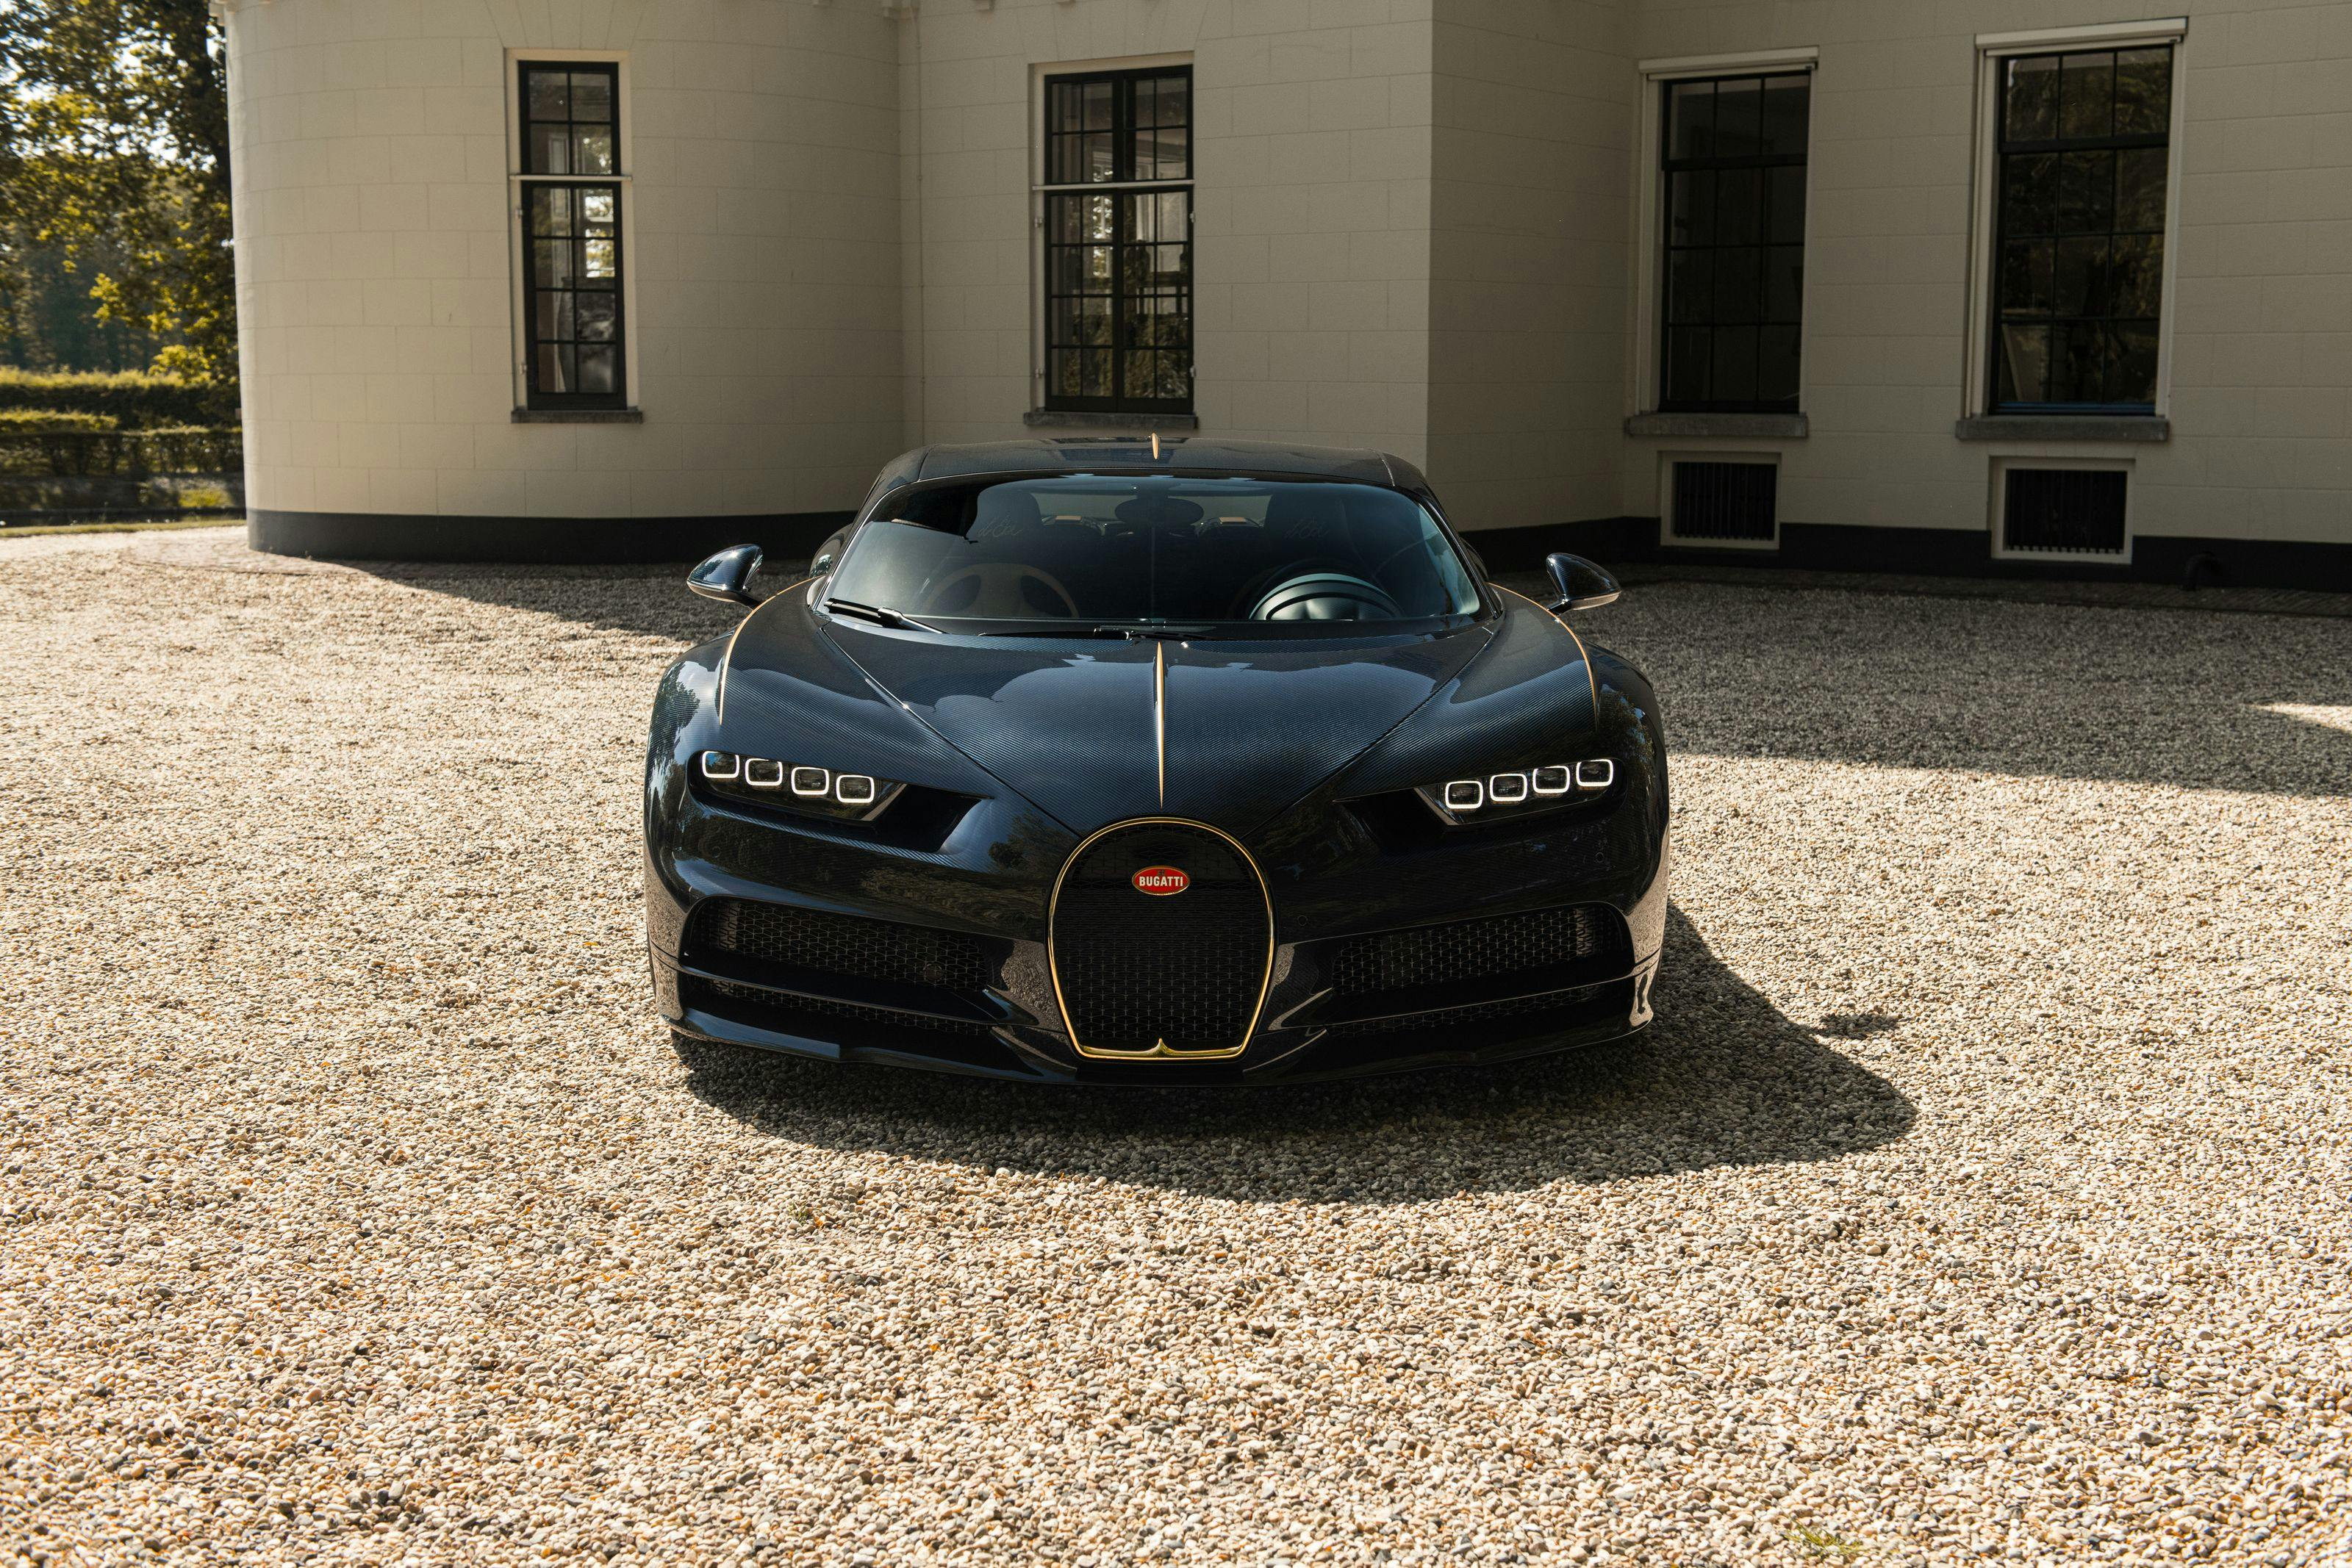 Bugatti Chiron L’Ébé – Bugatti honors Ettore's daughter with a special edition